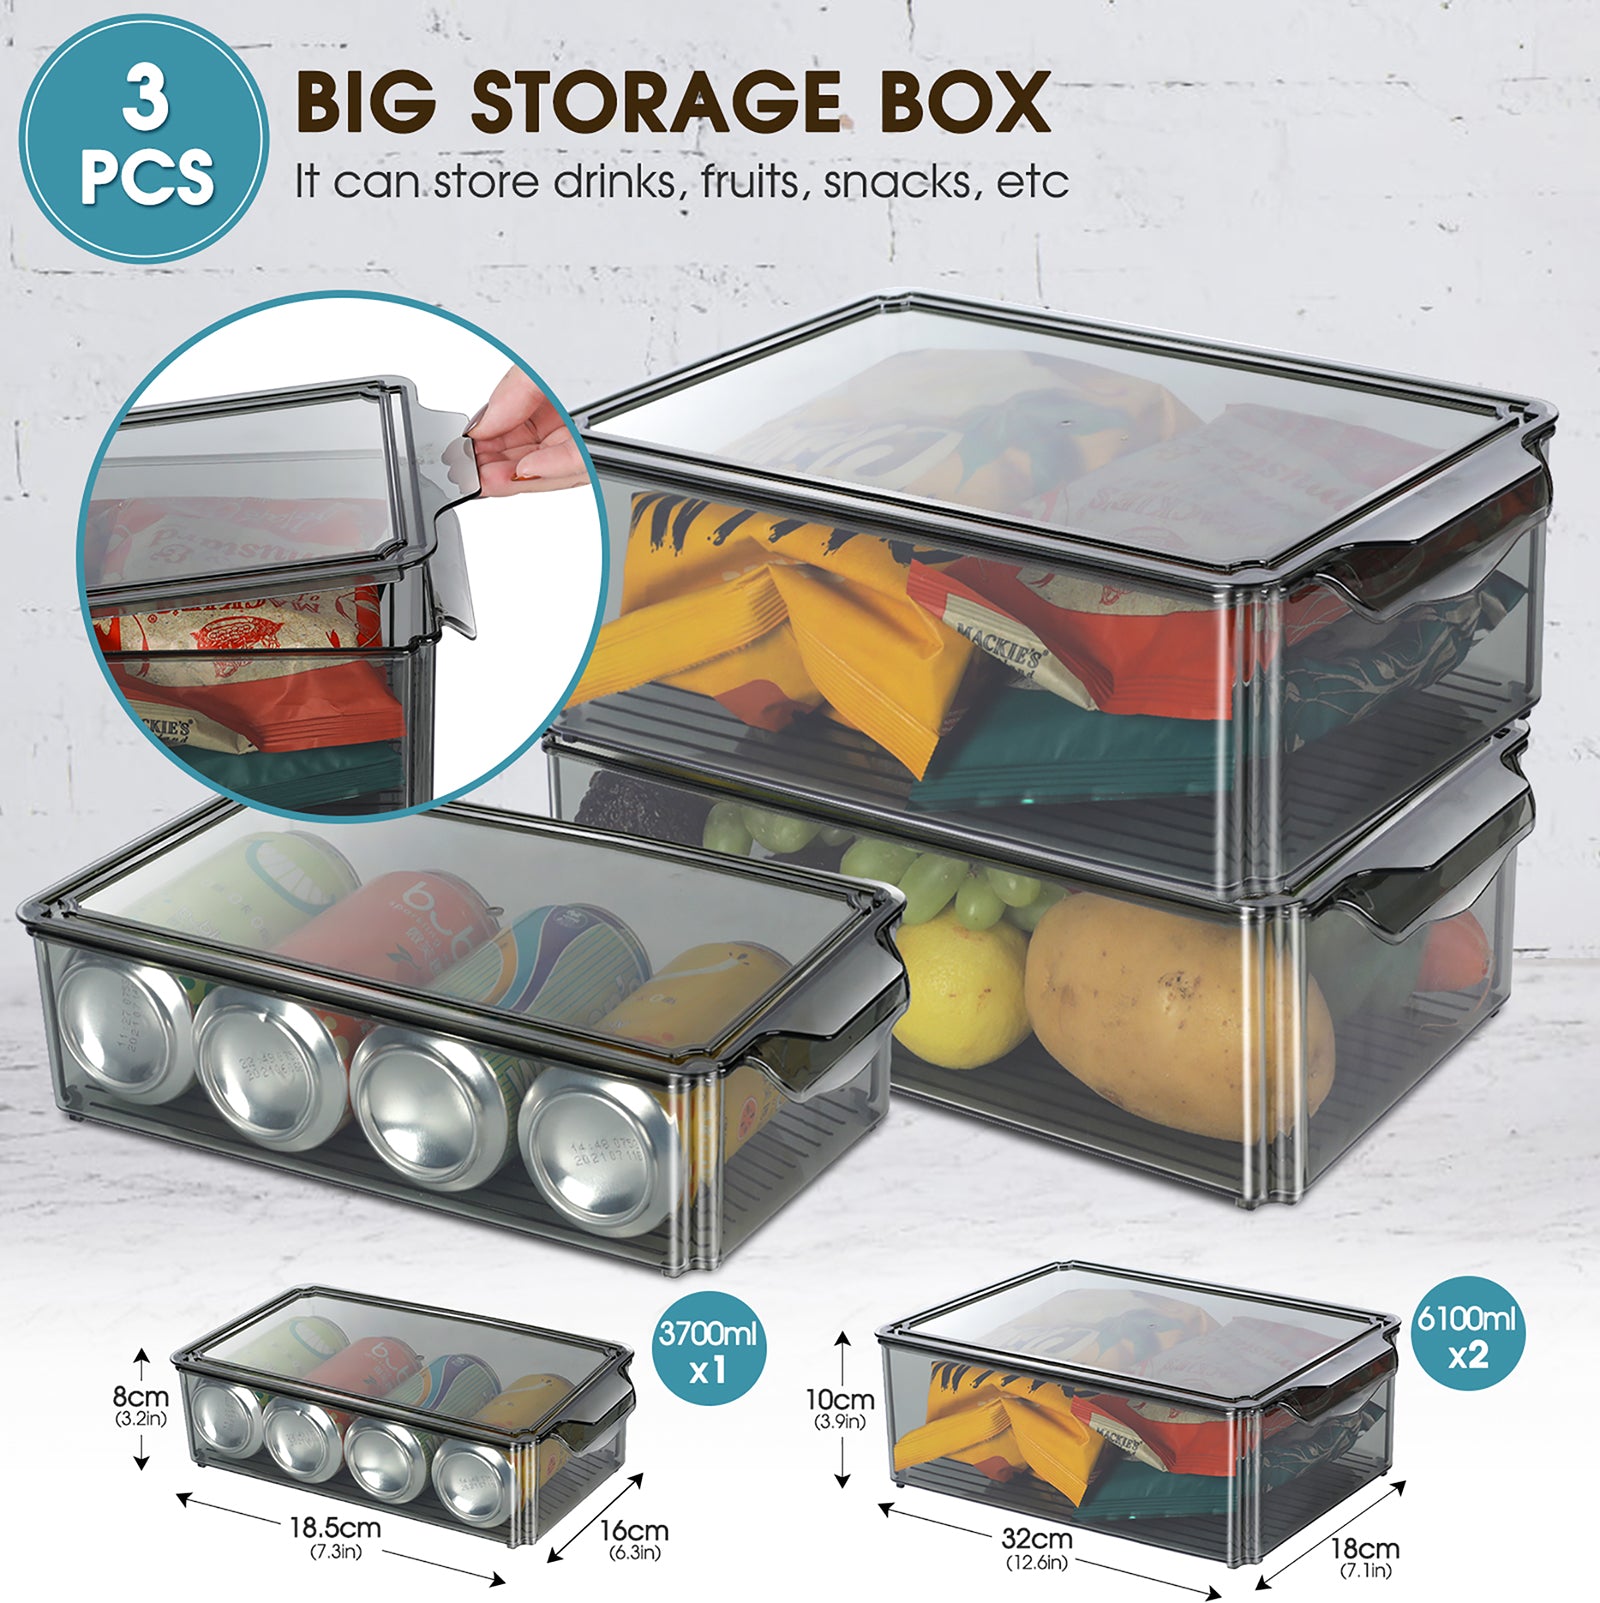 Masthome 9-Piece Fridge Storage Organizer with Egg Tray